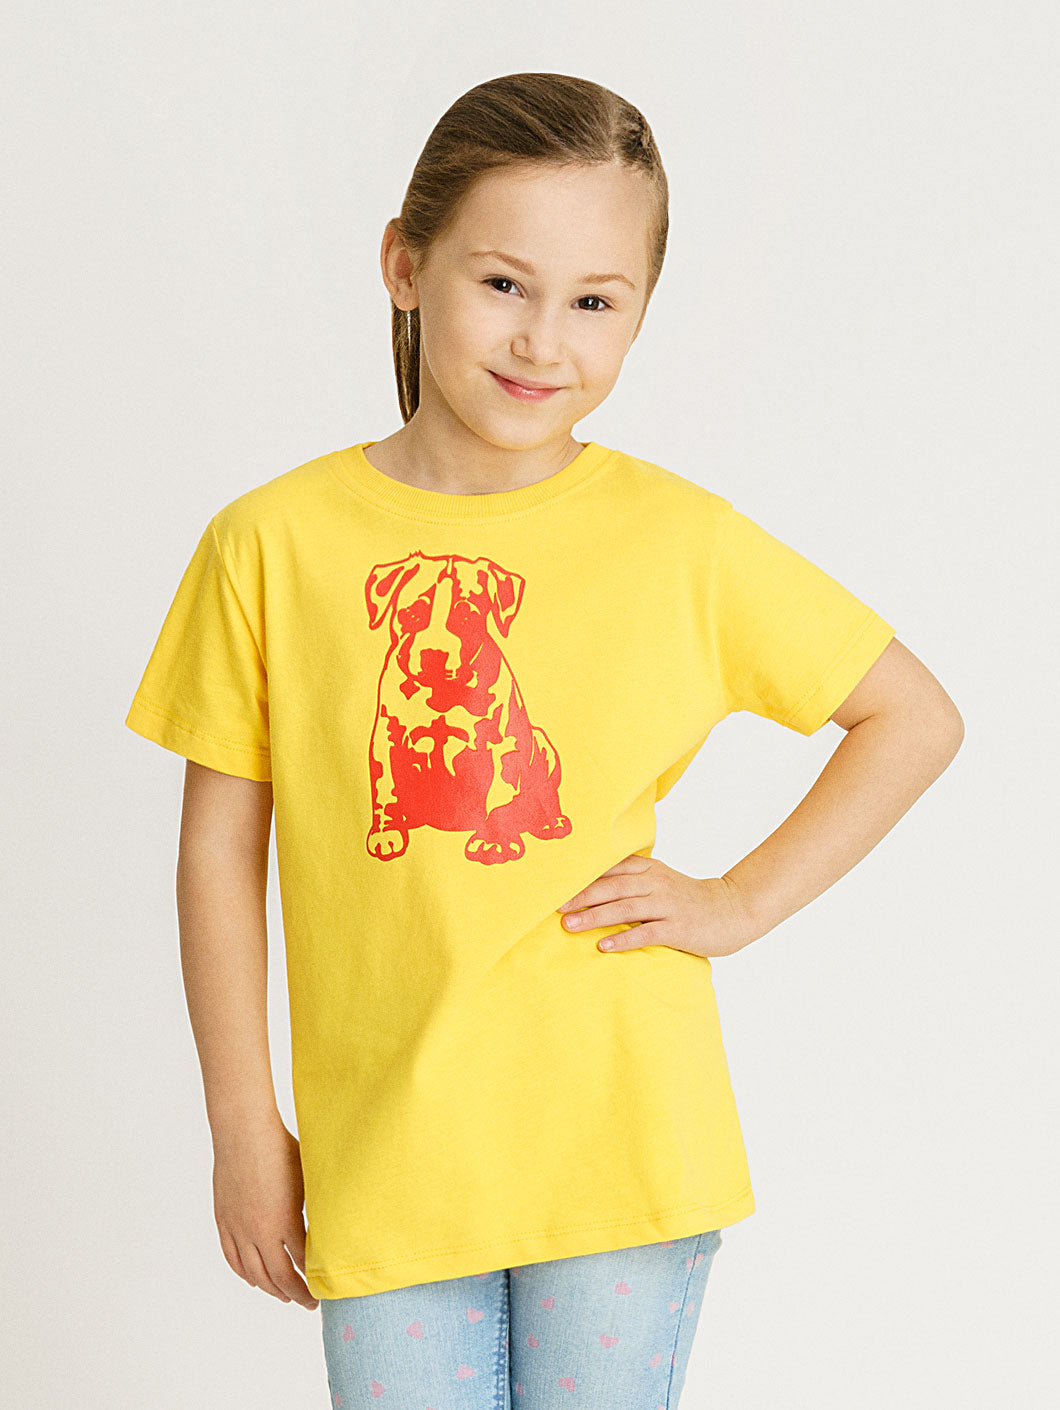 Babystaff Kids Logo T-Shirt gelb - 7